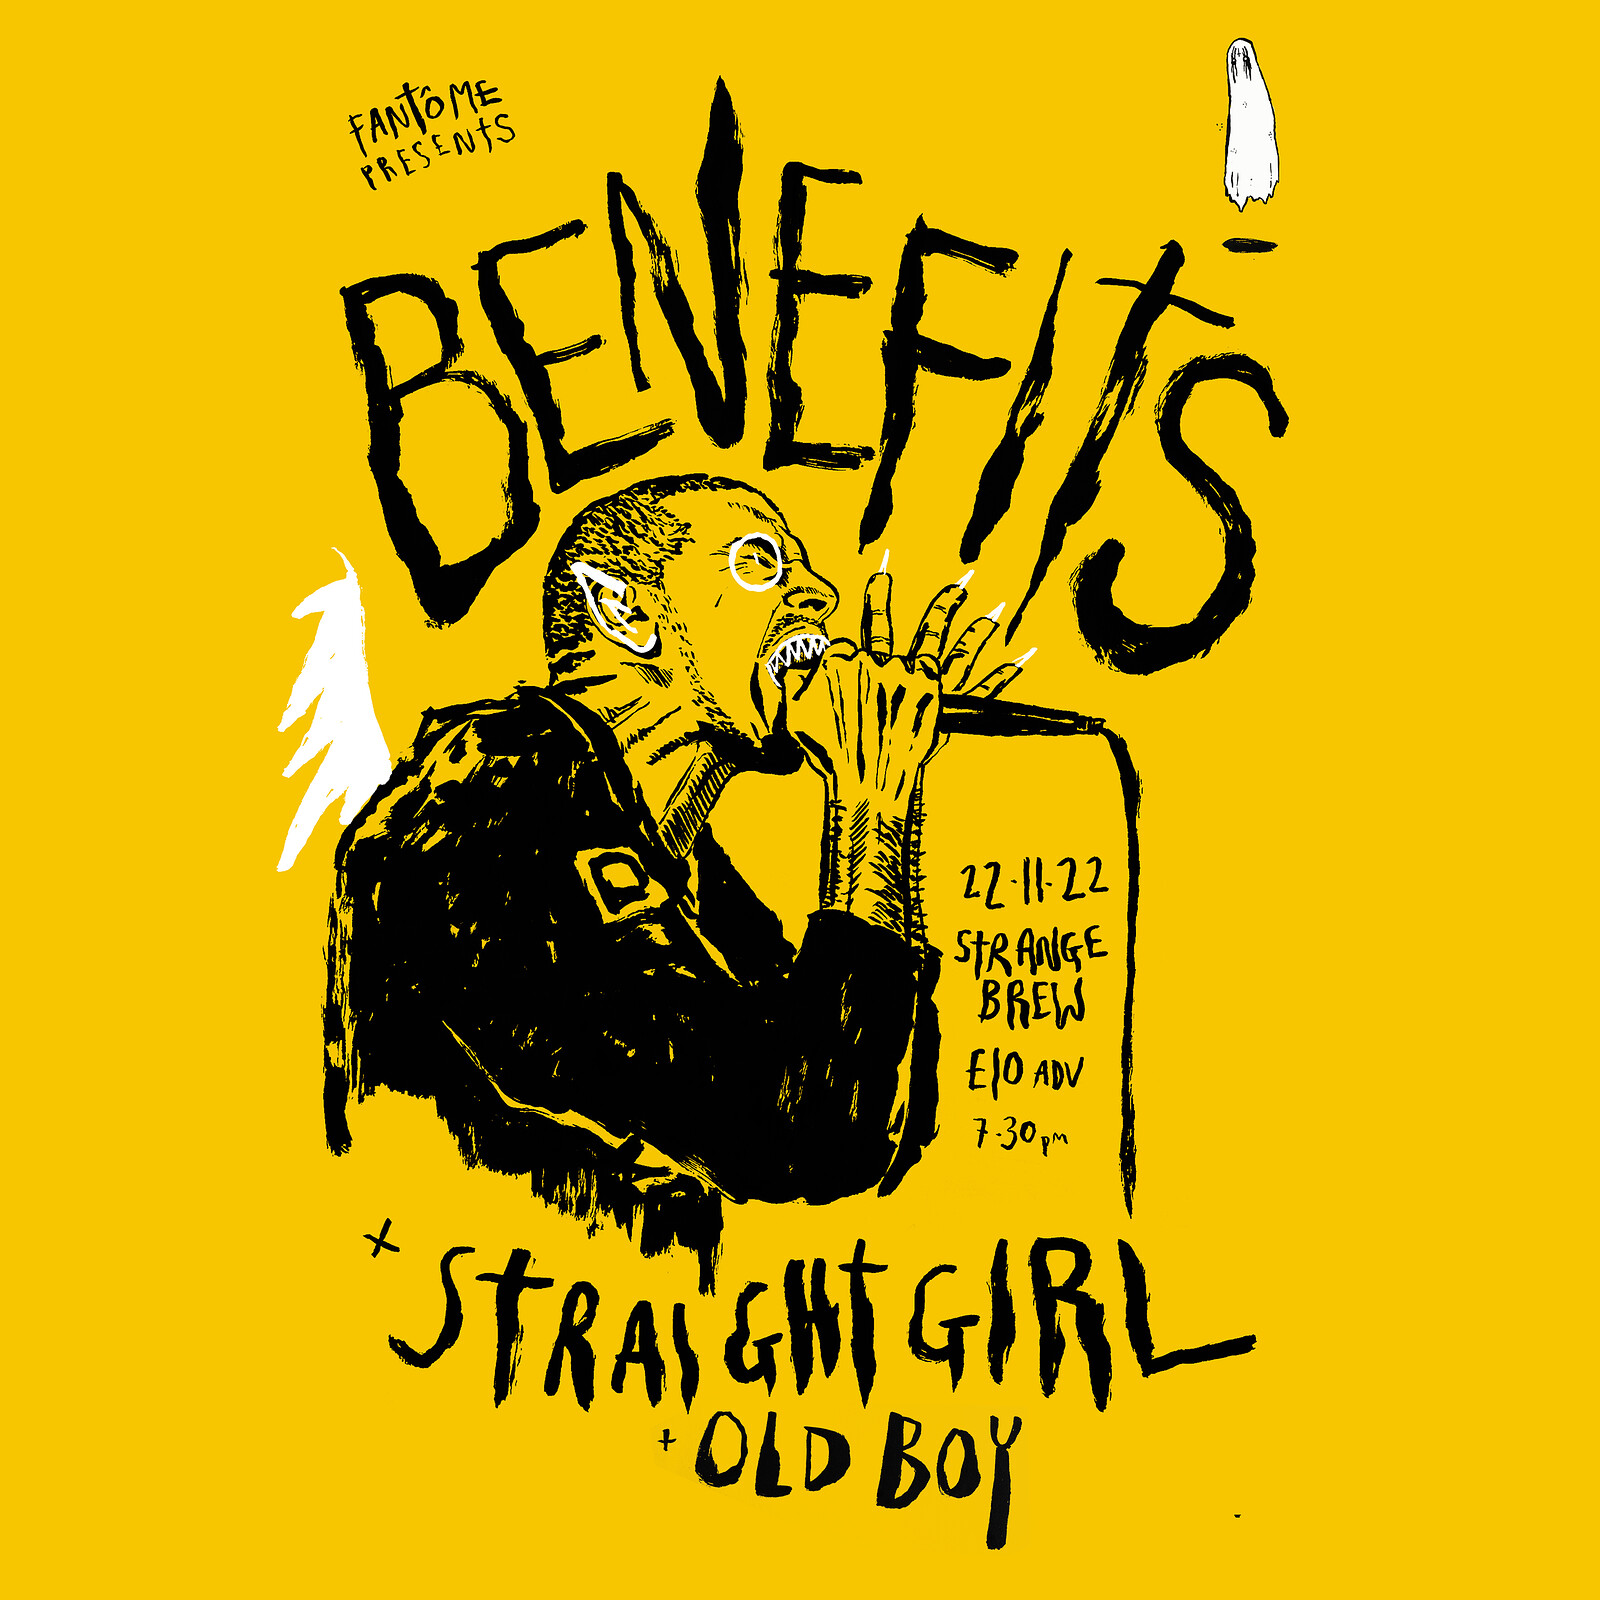 Benefits + STRAIGHT GIRL + Oldboy at Strange Brew